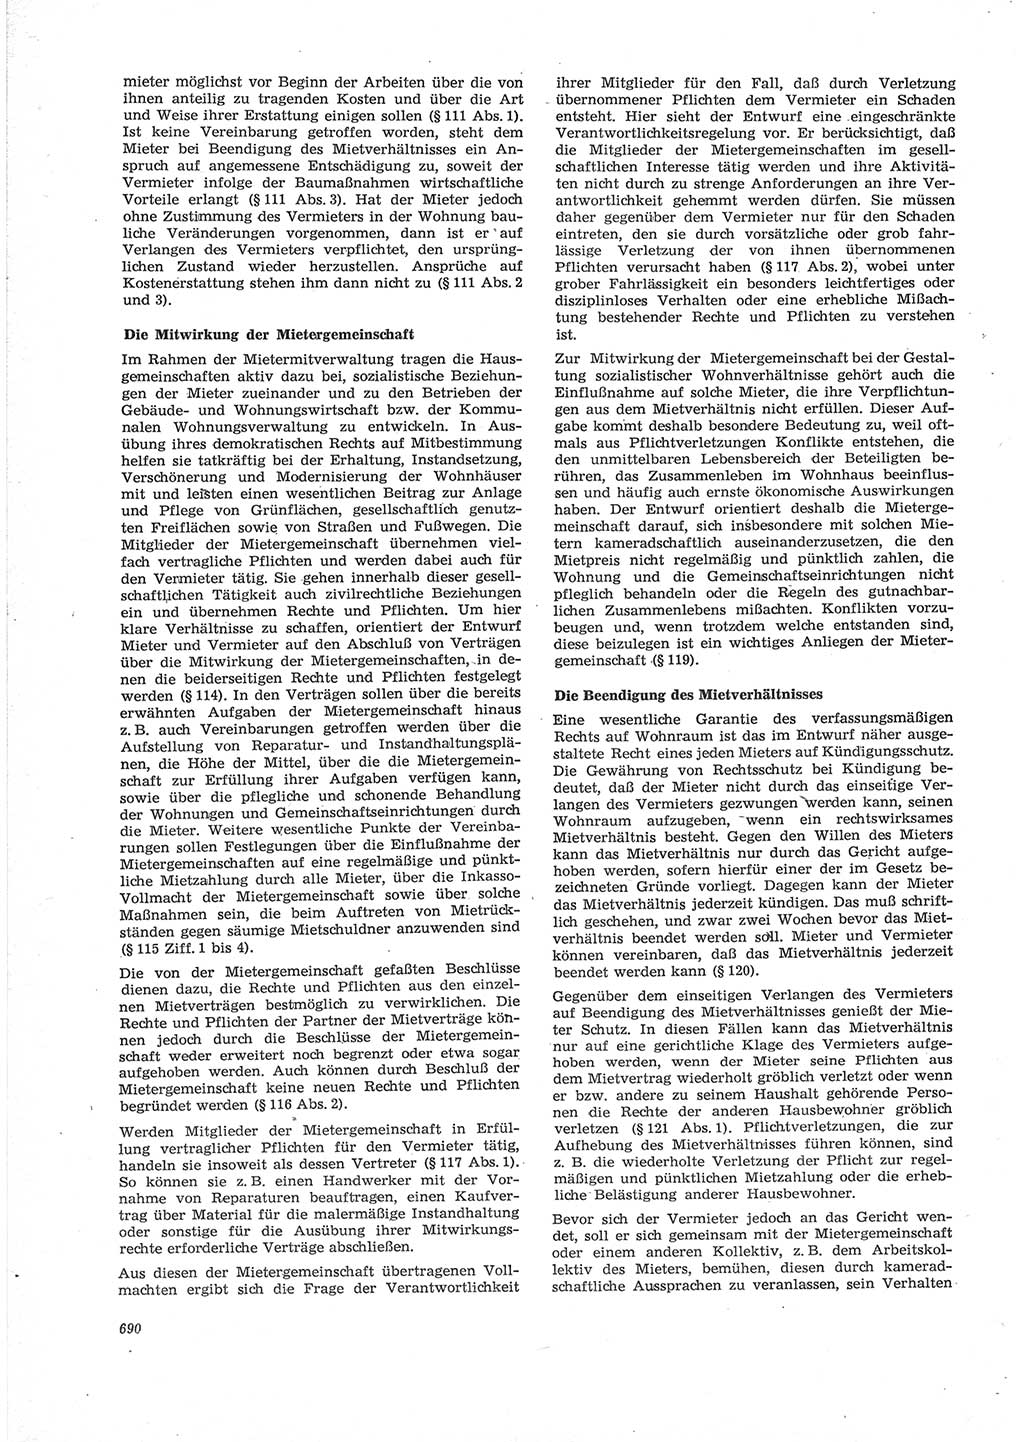 Neue Justiz (NJ), Zeitschrift für Recht und Rechtswissenschaft [Deutsche Demokratische Republik (DDR)], 28. Jahrgang 1974, Seite 690 (NJ DDR 1974, S. 690)